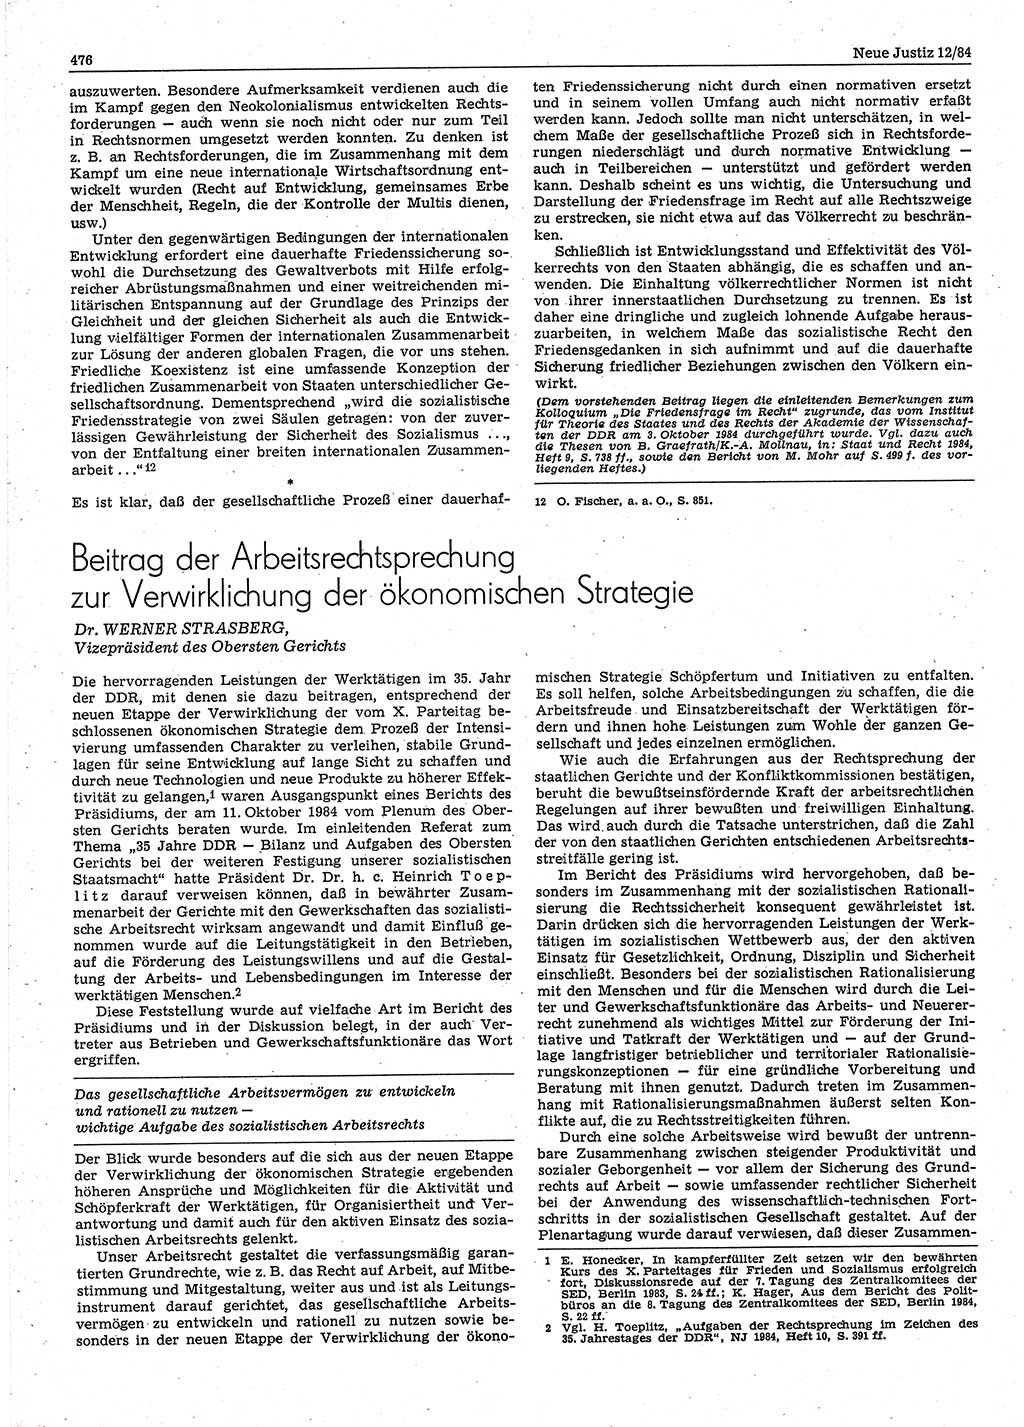 Neue Justiz (NJ), Zeitschrift für sozialistisches Recht und Gesetzlichkeit [Deutsche Demokratische Republik (DDR)], 38. Jahrgang 1984, Seite 476 (NJ DDR 1984, S. 476)